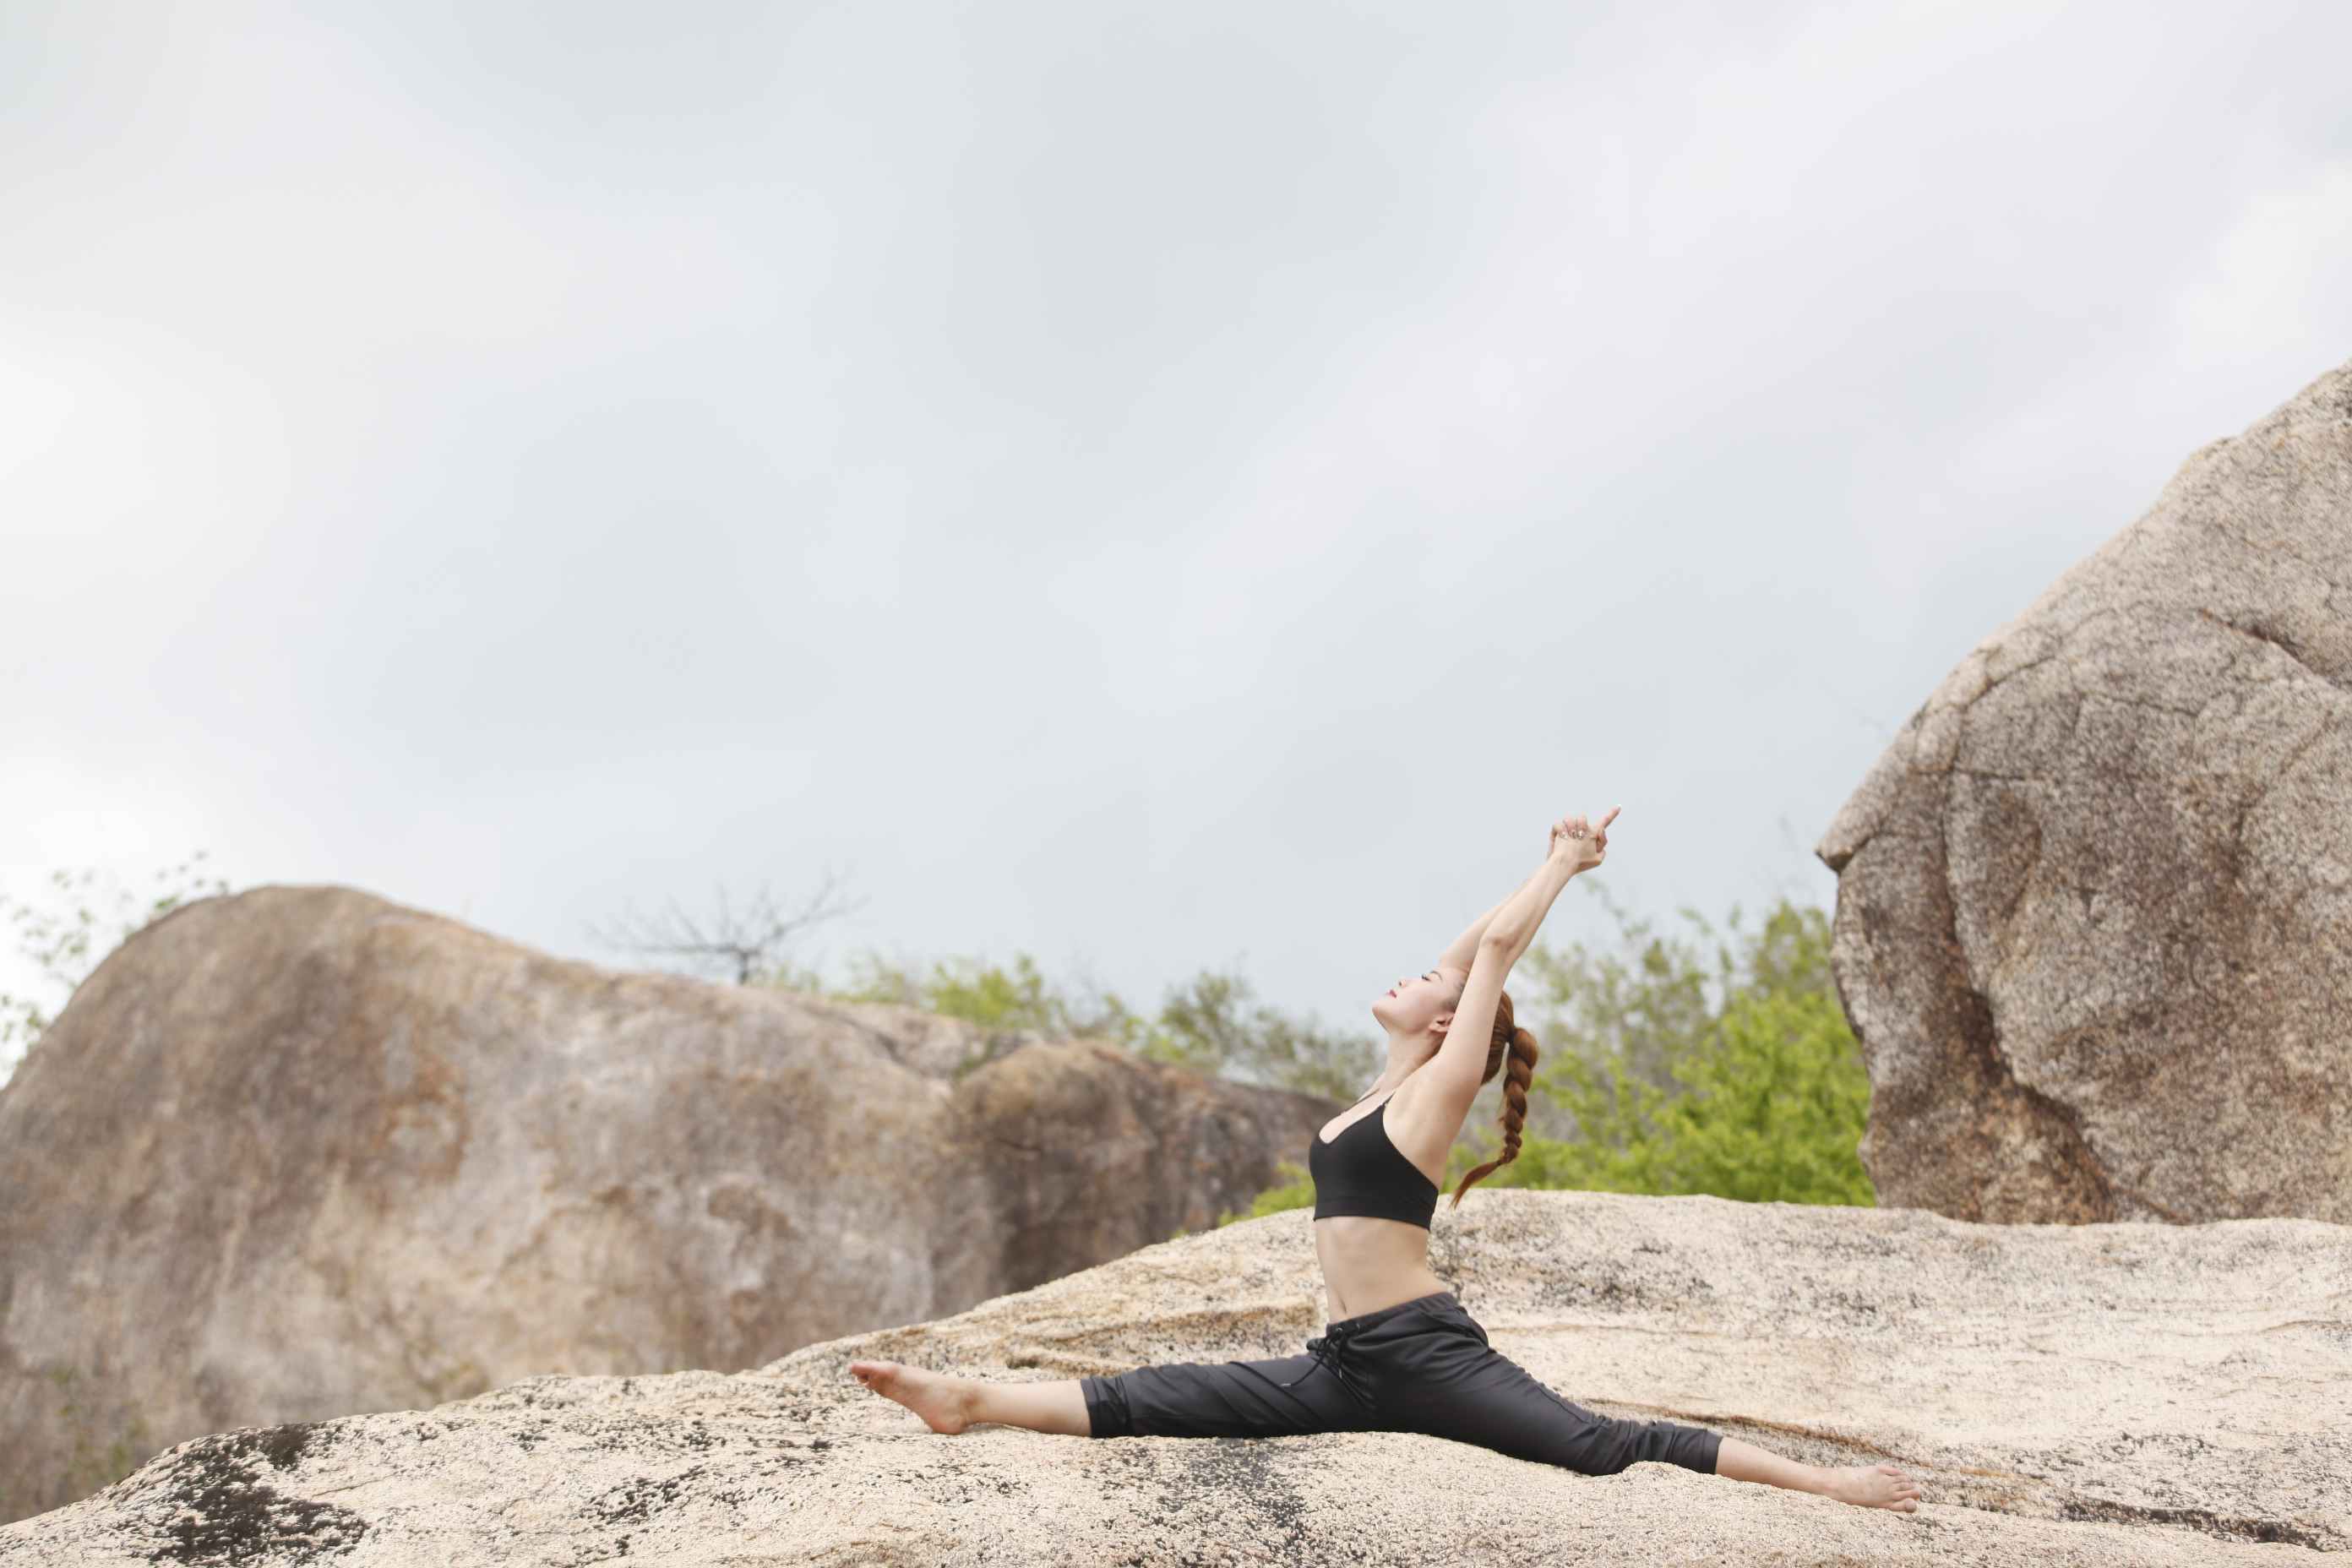 Ngắm hình ảnh Minh Hằng siêu gợi cảm tập yoga trên núi - Ảnh 2